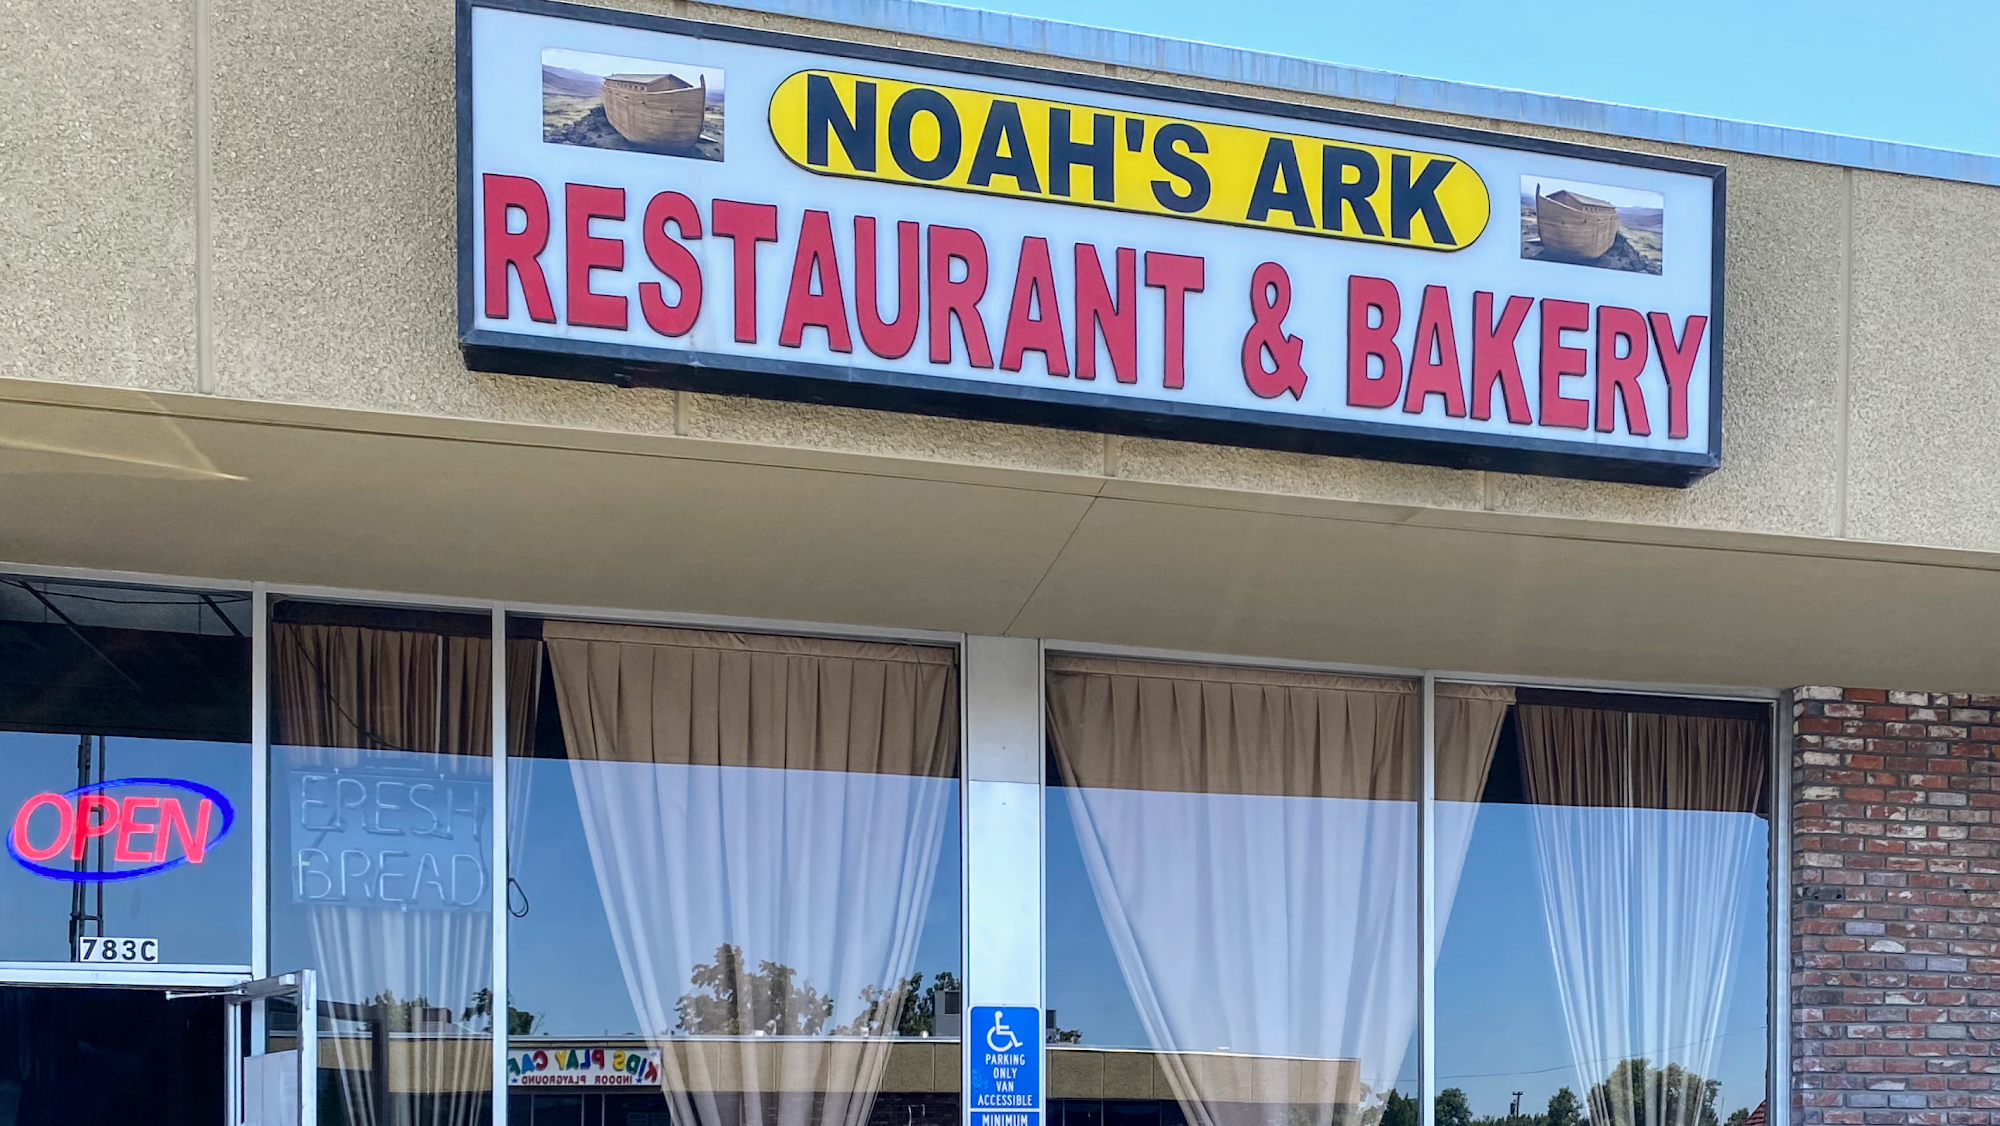 Noah's Ark Restaurant & Bakery